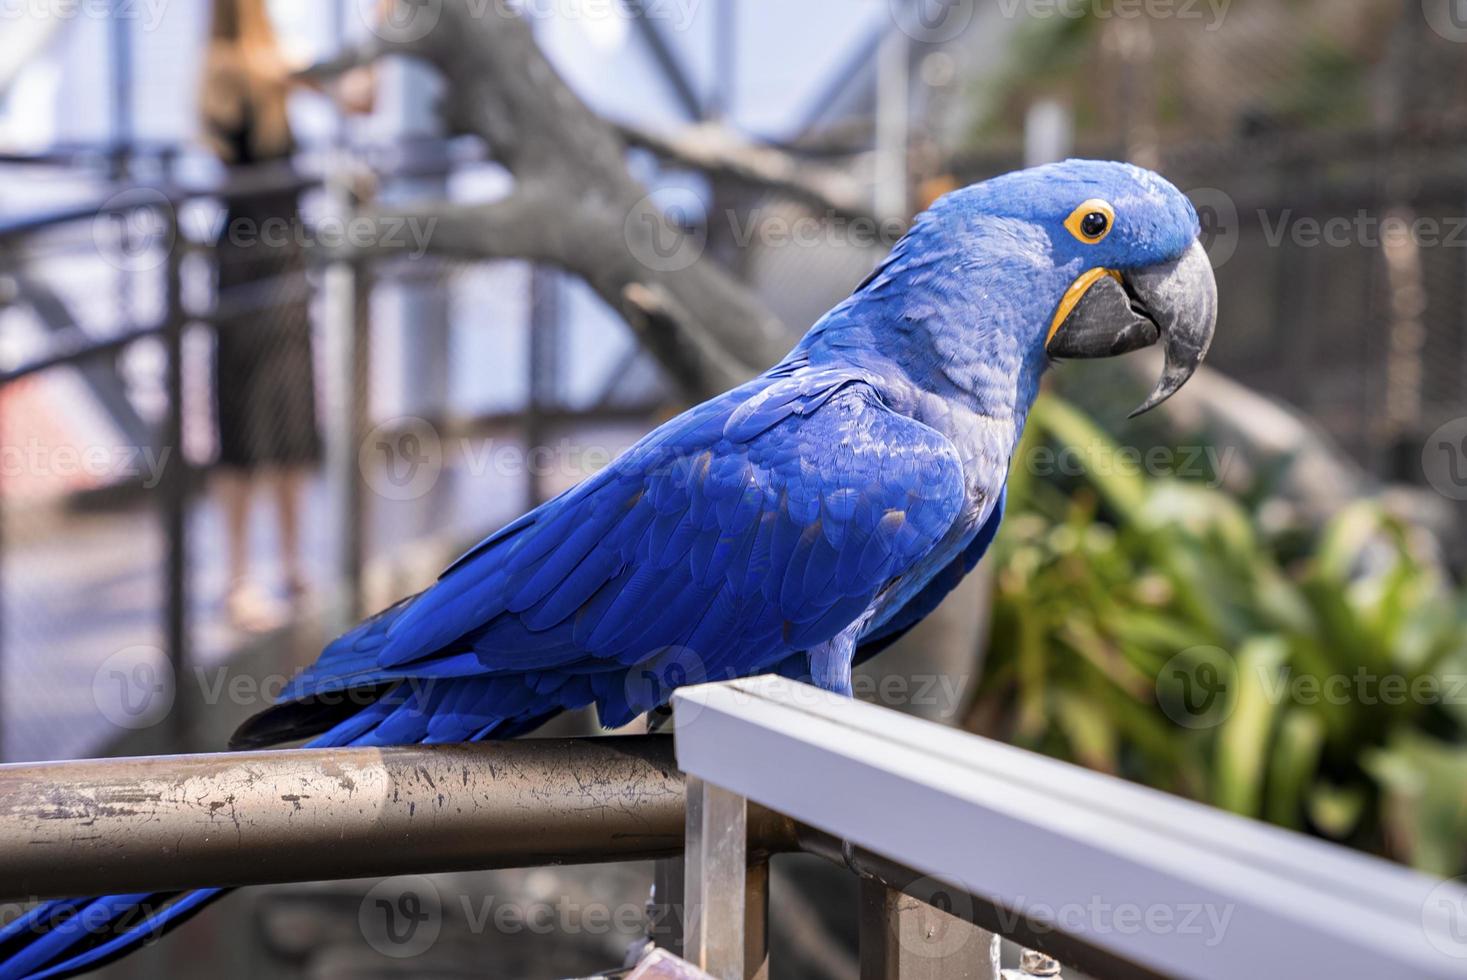 papagaio de arara jacinto com pena azul empoleirado na grade no zoológico foto